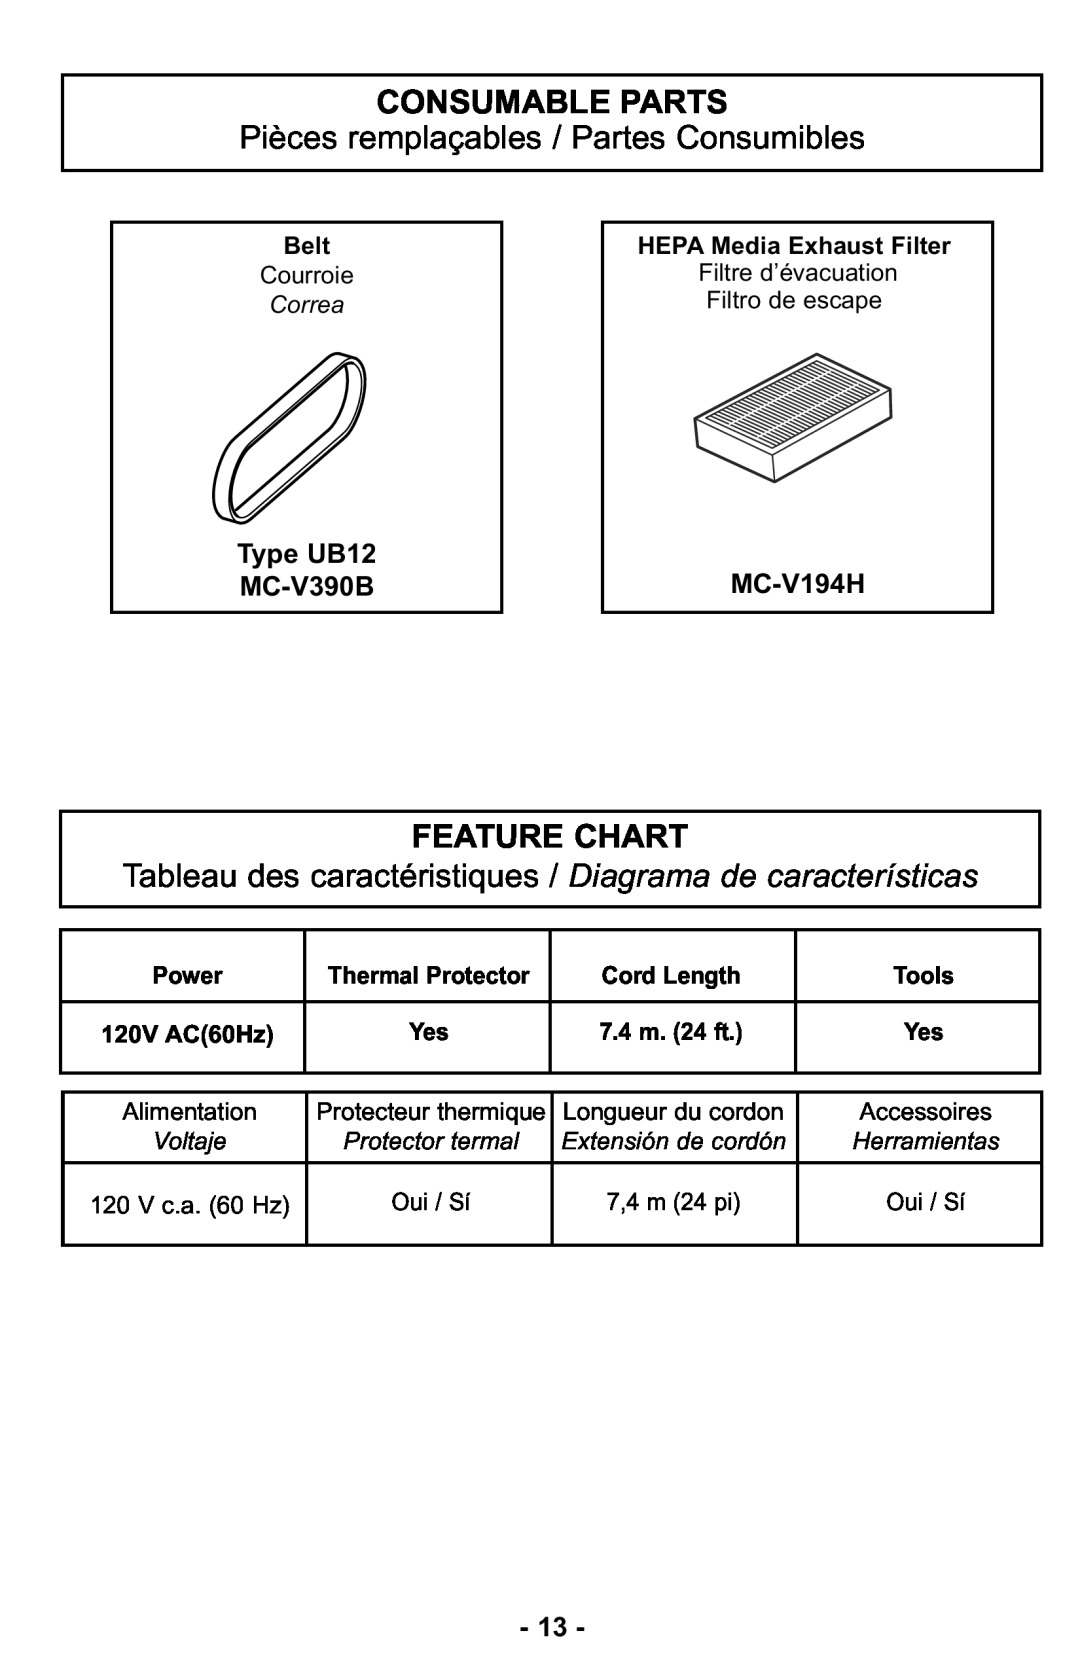 Panasonic MC-UL427 Consumable Parts, Pièces remplaçables / Partes Consumibles, Feature Chart, Type UB12 MC-V390B, MC-V194H 